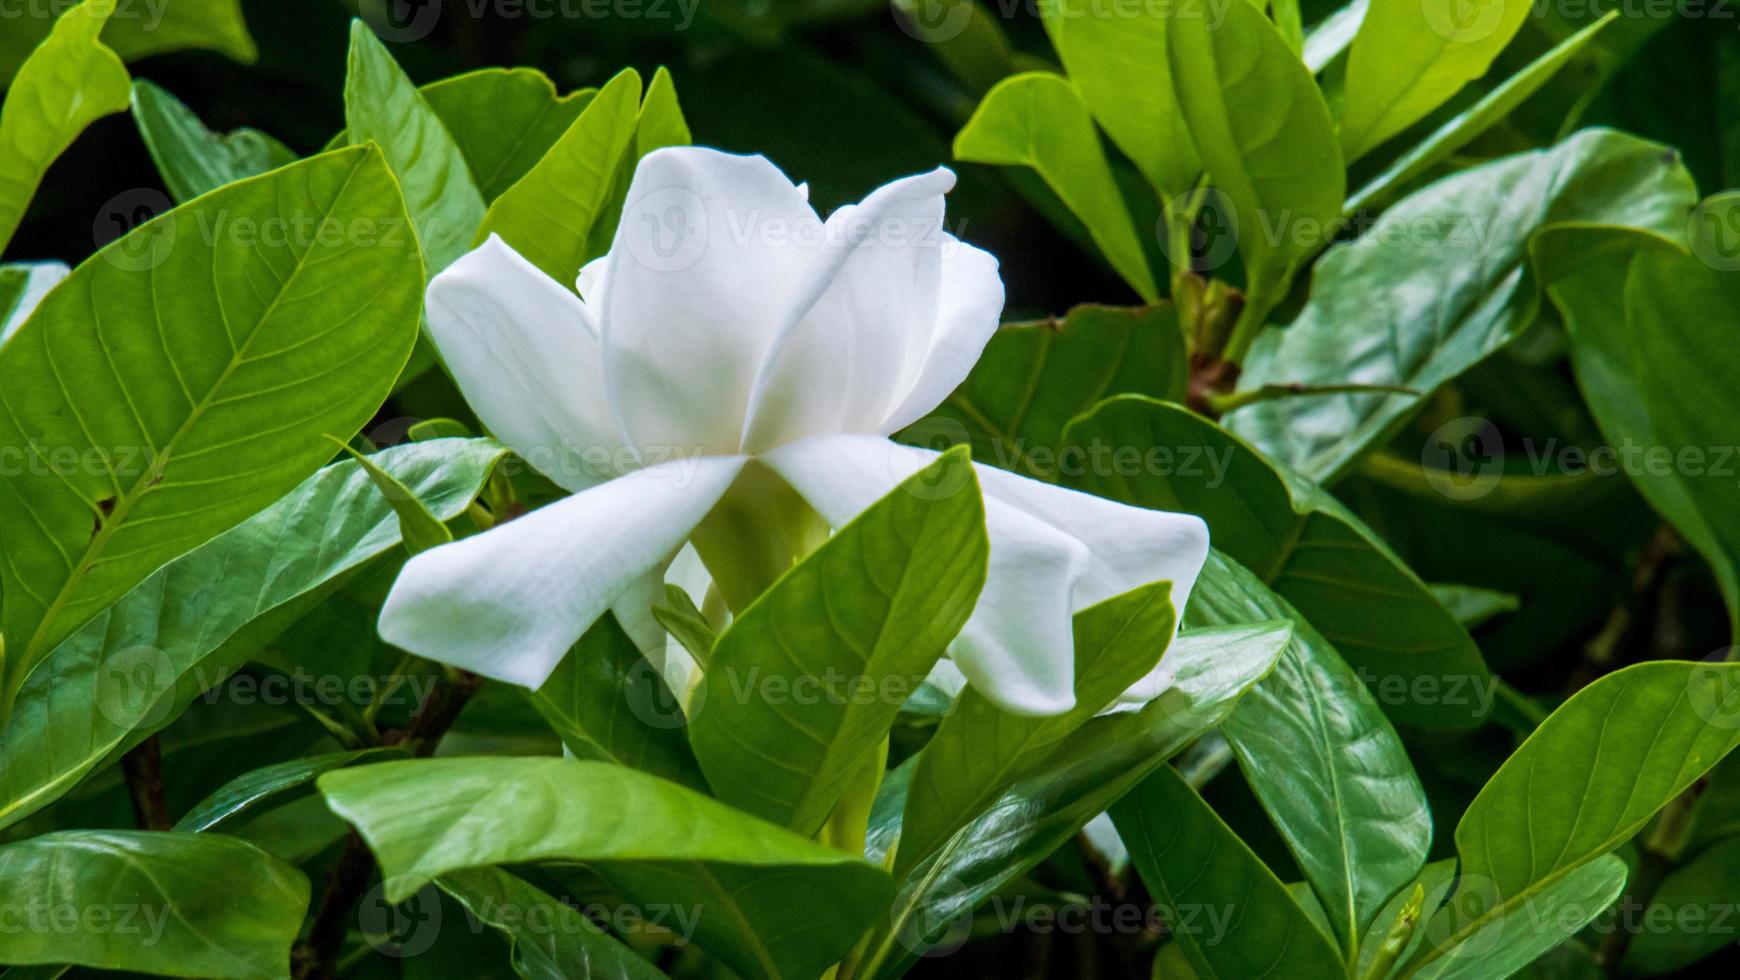 flor de gardenia blanca. jazmín del cabo en flor. la gardenia jasminoides.  12001101 Foto de stock en Vecteezy